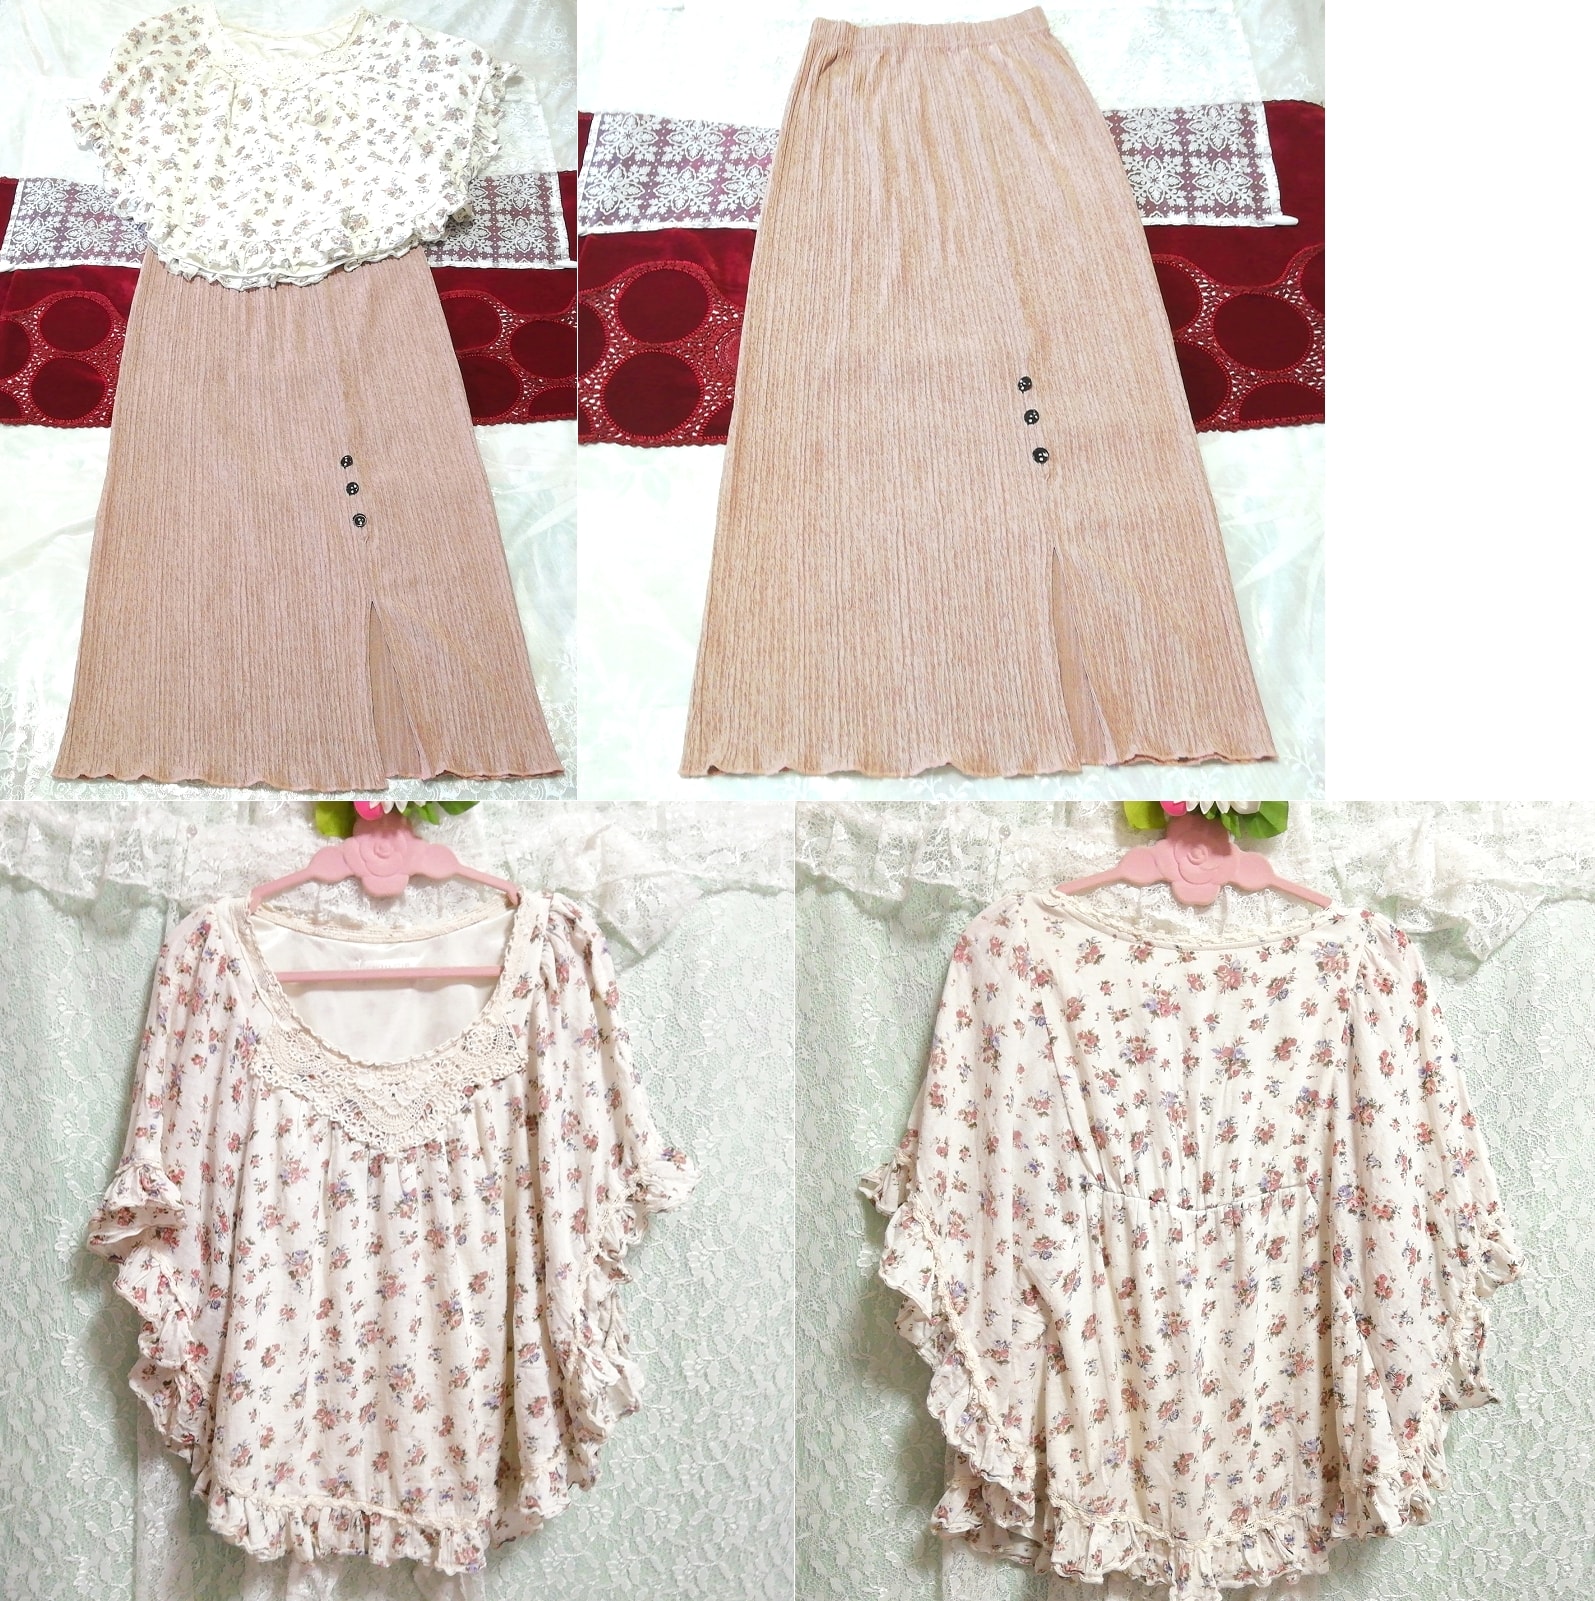 白色棉质花卉图案雨披长款睡衣粉色米色长裙 2 件, 时尚, 女士时装, 睡衣